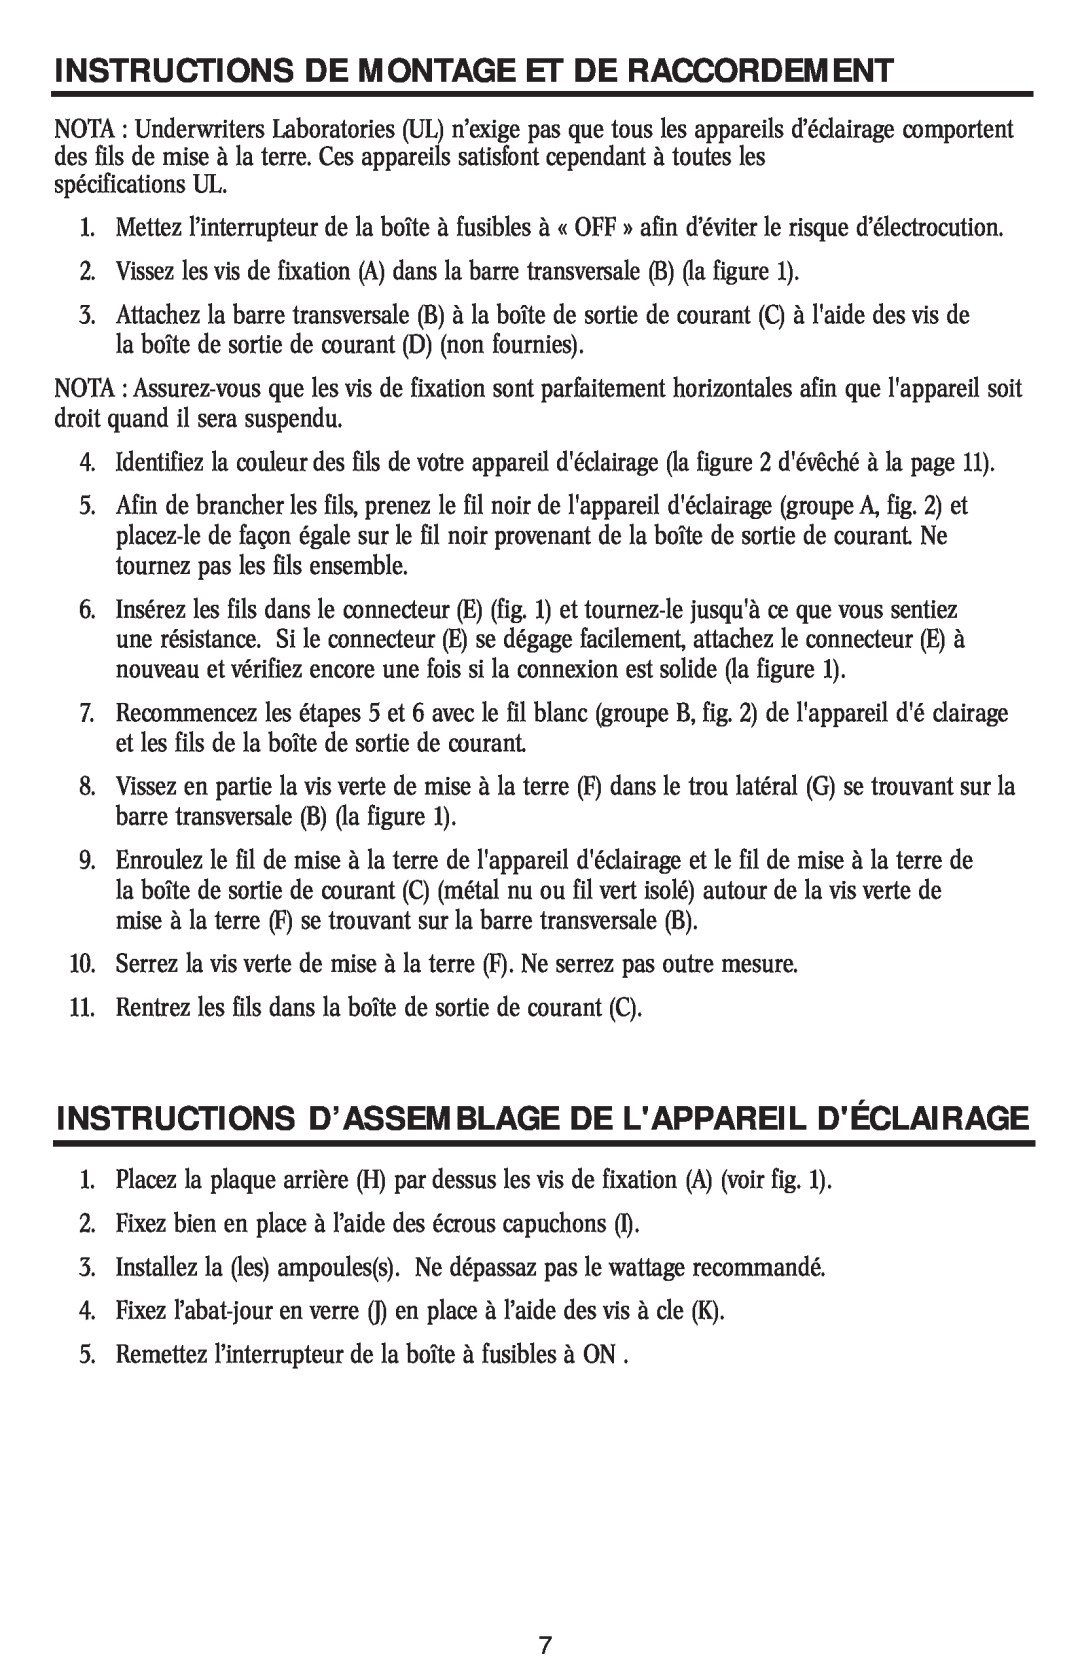 Westinghouse W-105 Instructions D’Assemblage De Lappareil Déclairage, Instructions De Montage Et De Raccordement 